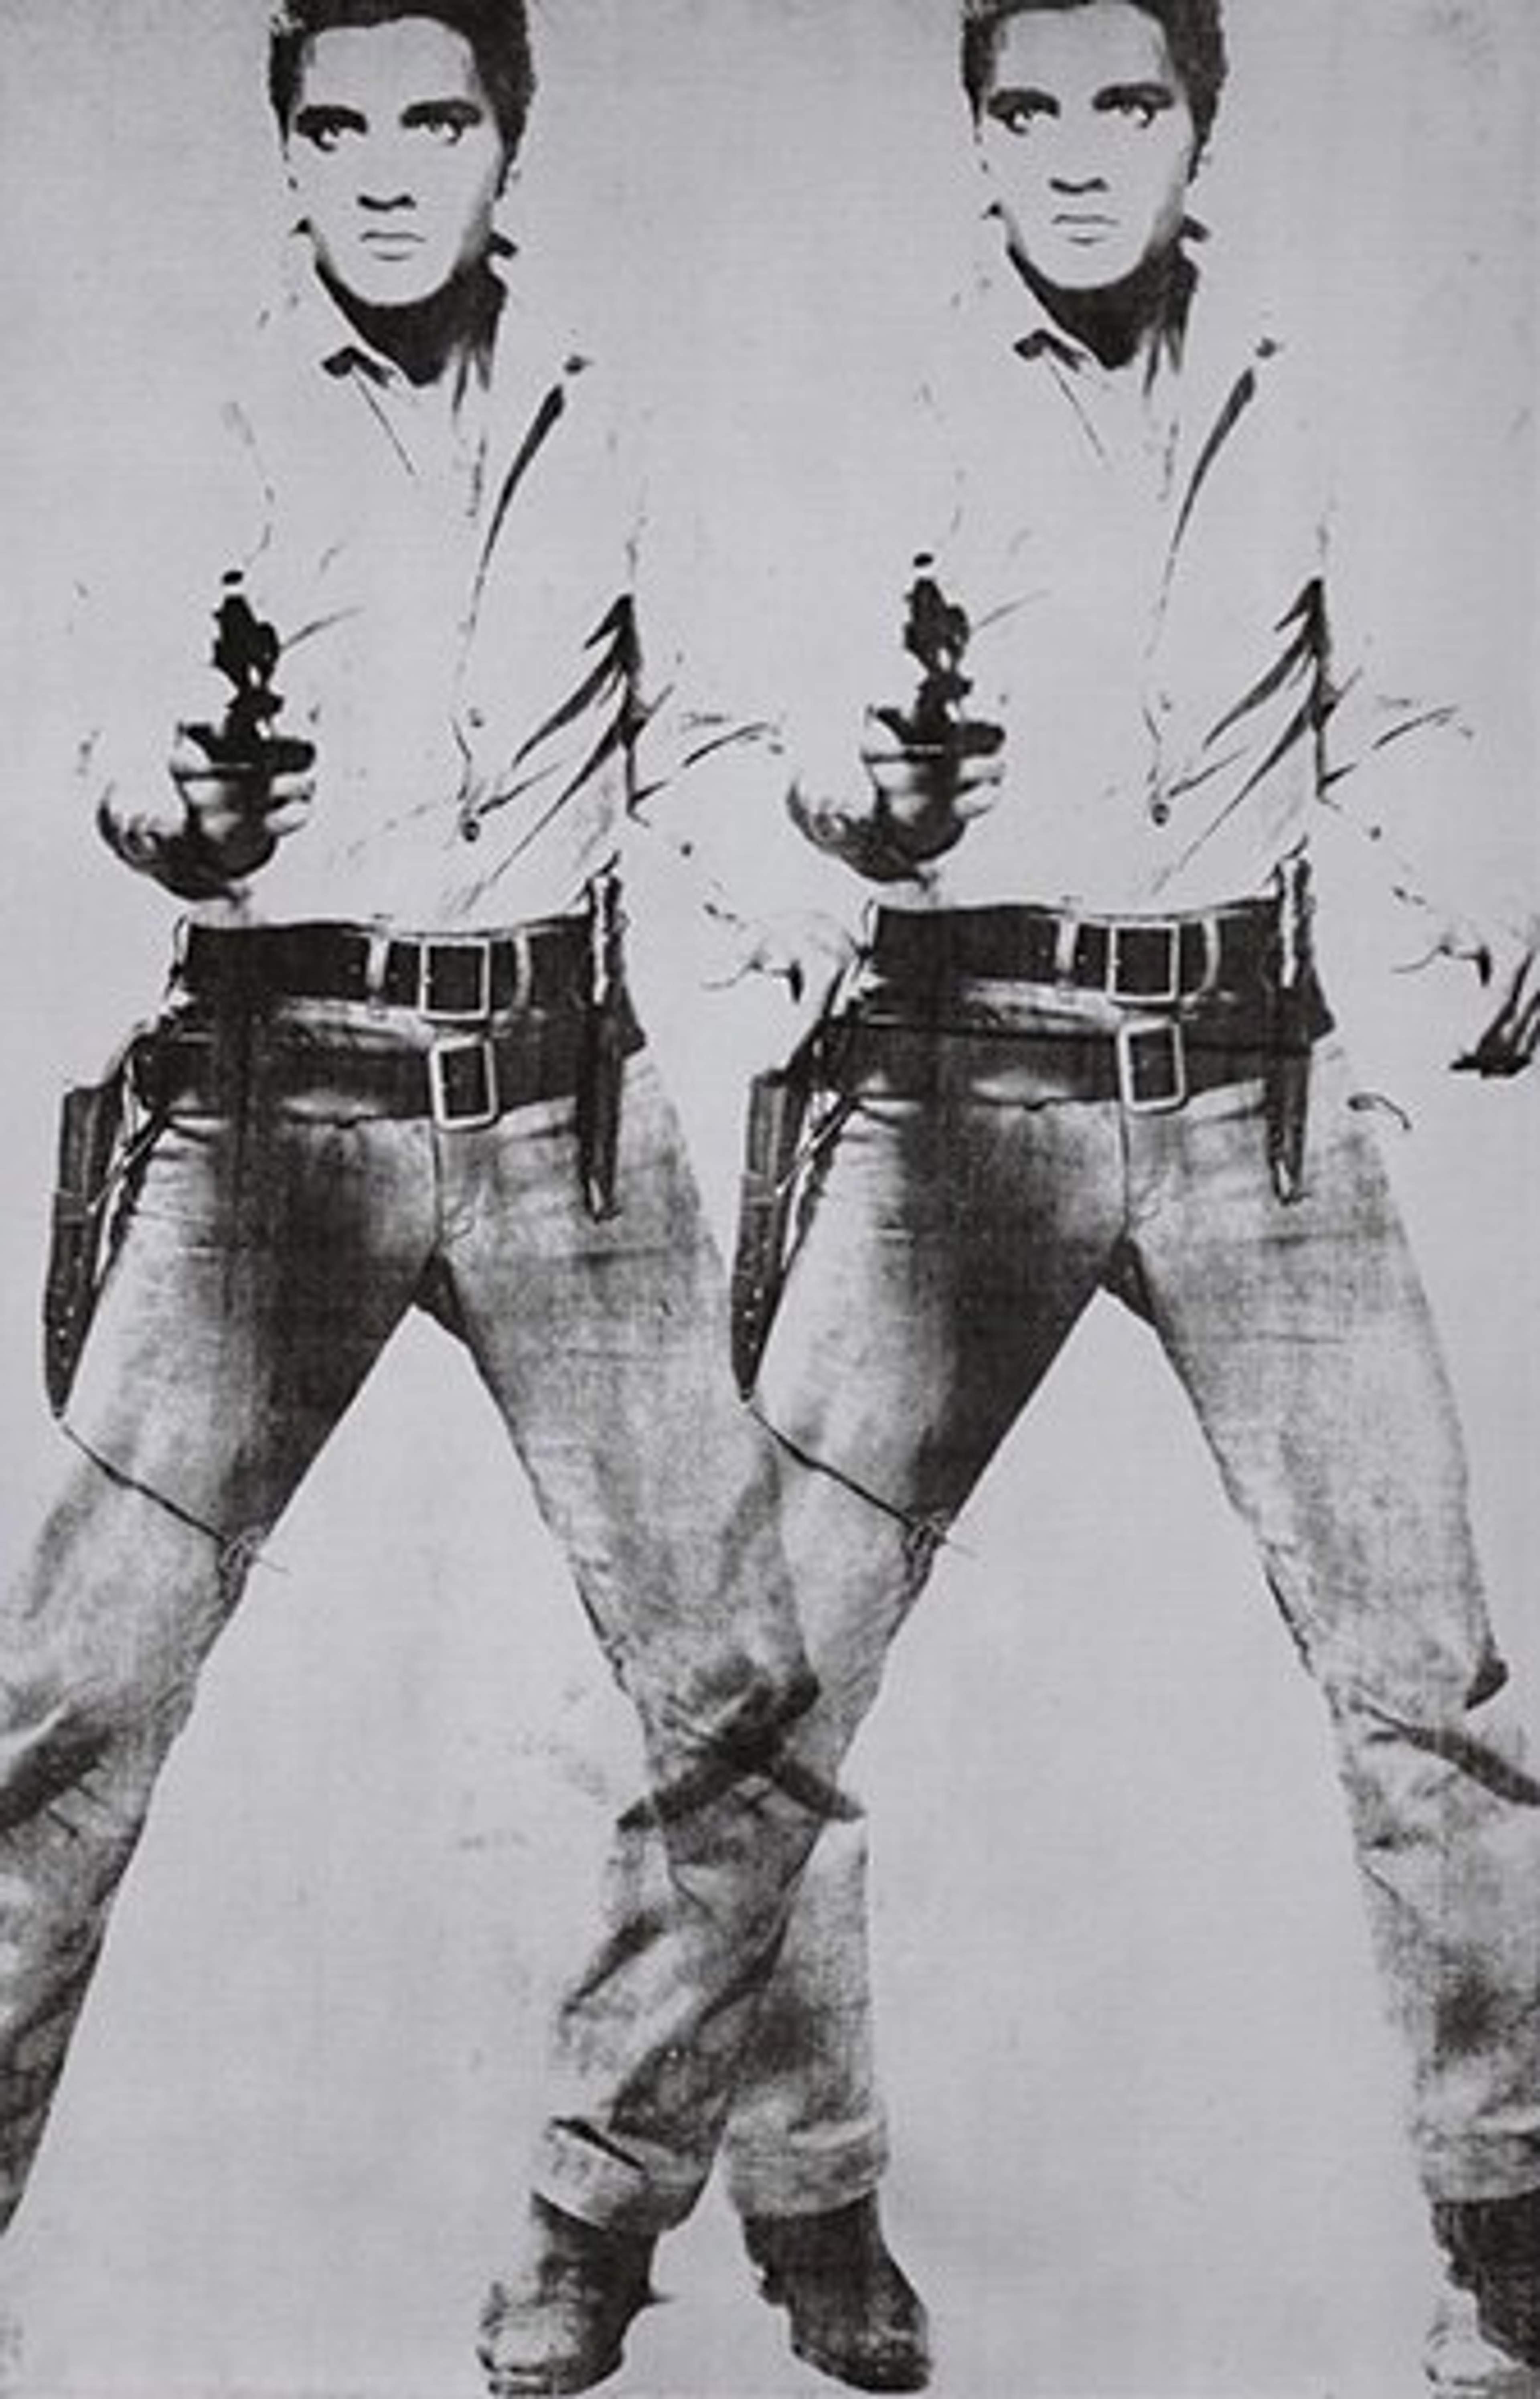 Double Elvis by Andy Warhol - MyArtBroker